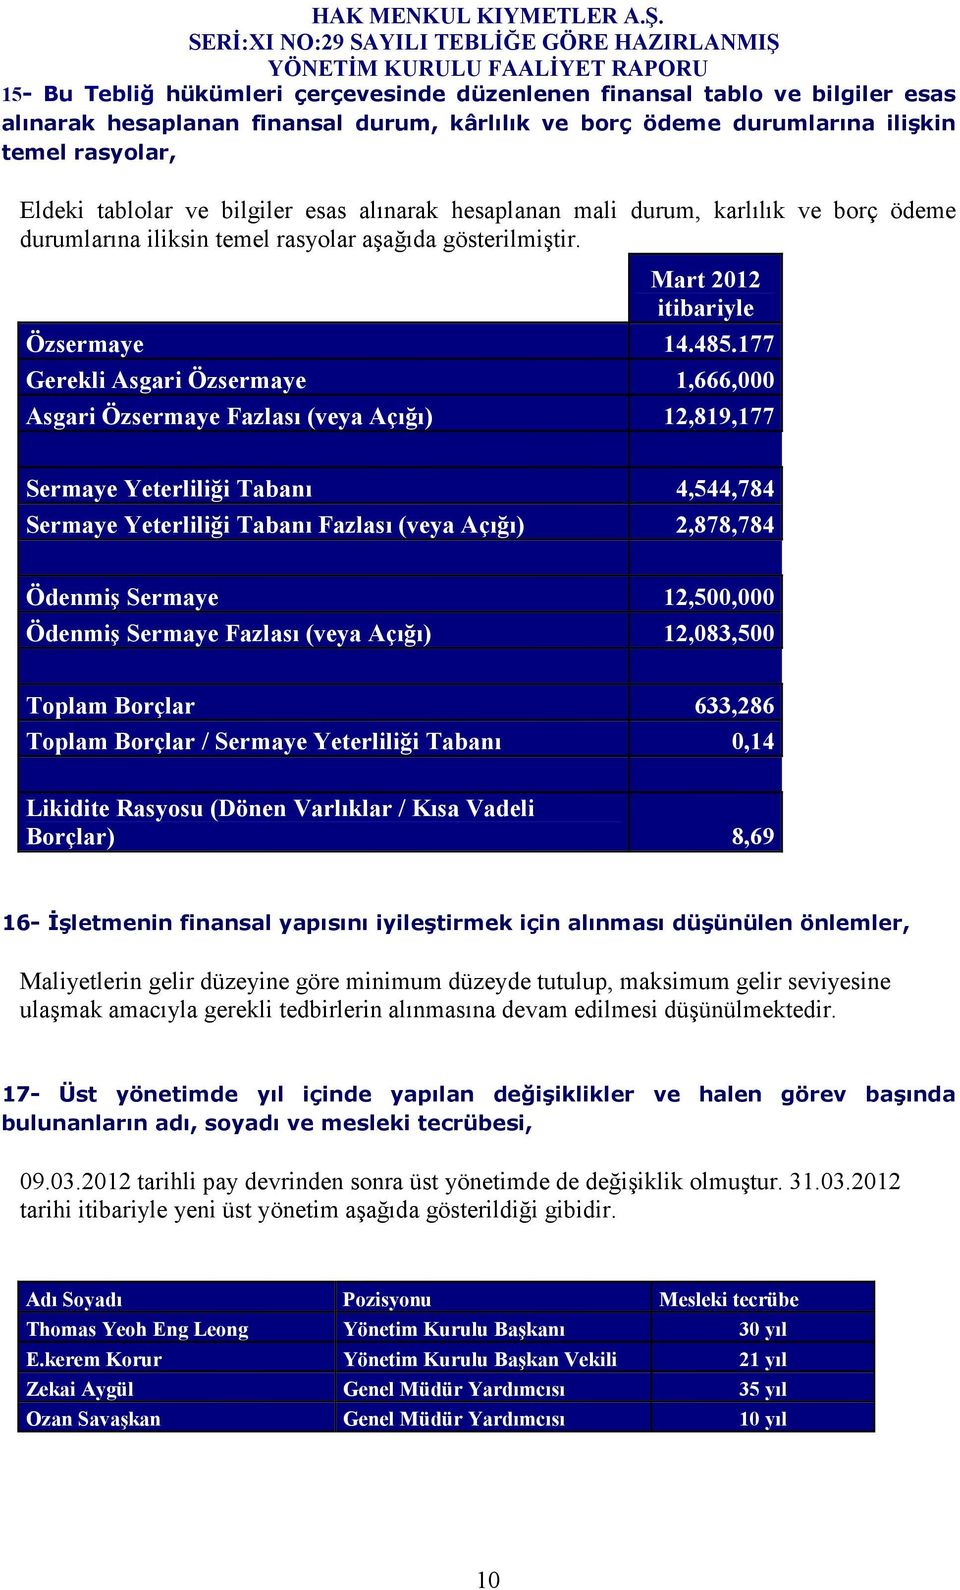 177 Gerekli Asgari Özsermaye 1,666,000 Asgari Özsermaye Fazlası (veya Açığı) 12,819,177 Sermaye Yeterliliği Tabanı 4,544,784 Sermaye Yeterliliği Tabanı Fazlası (veya Açığı) 2,878,784 Ödenmiş Sermaye